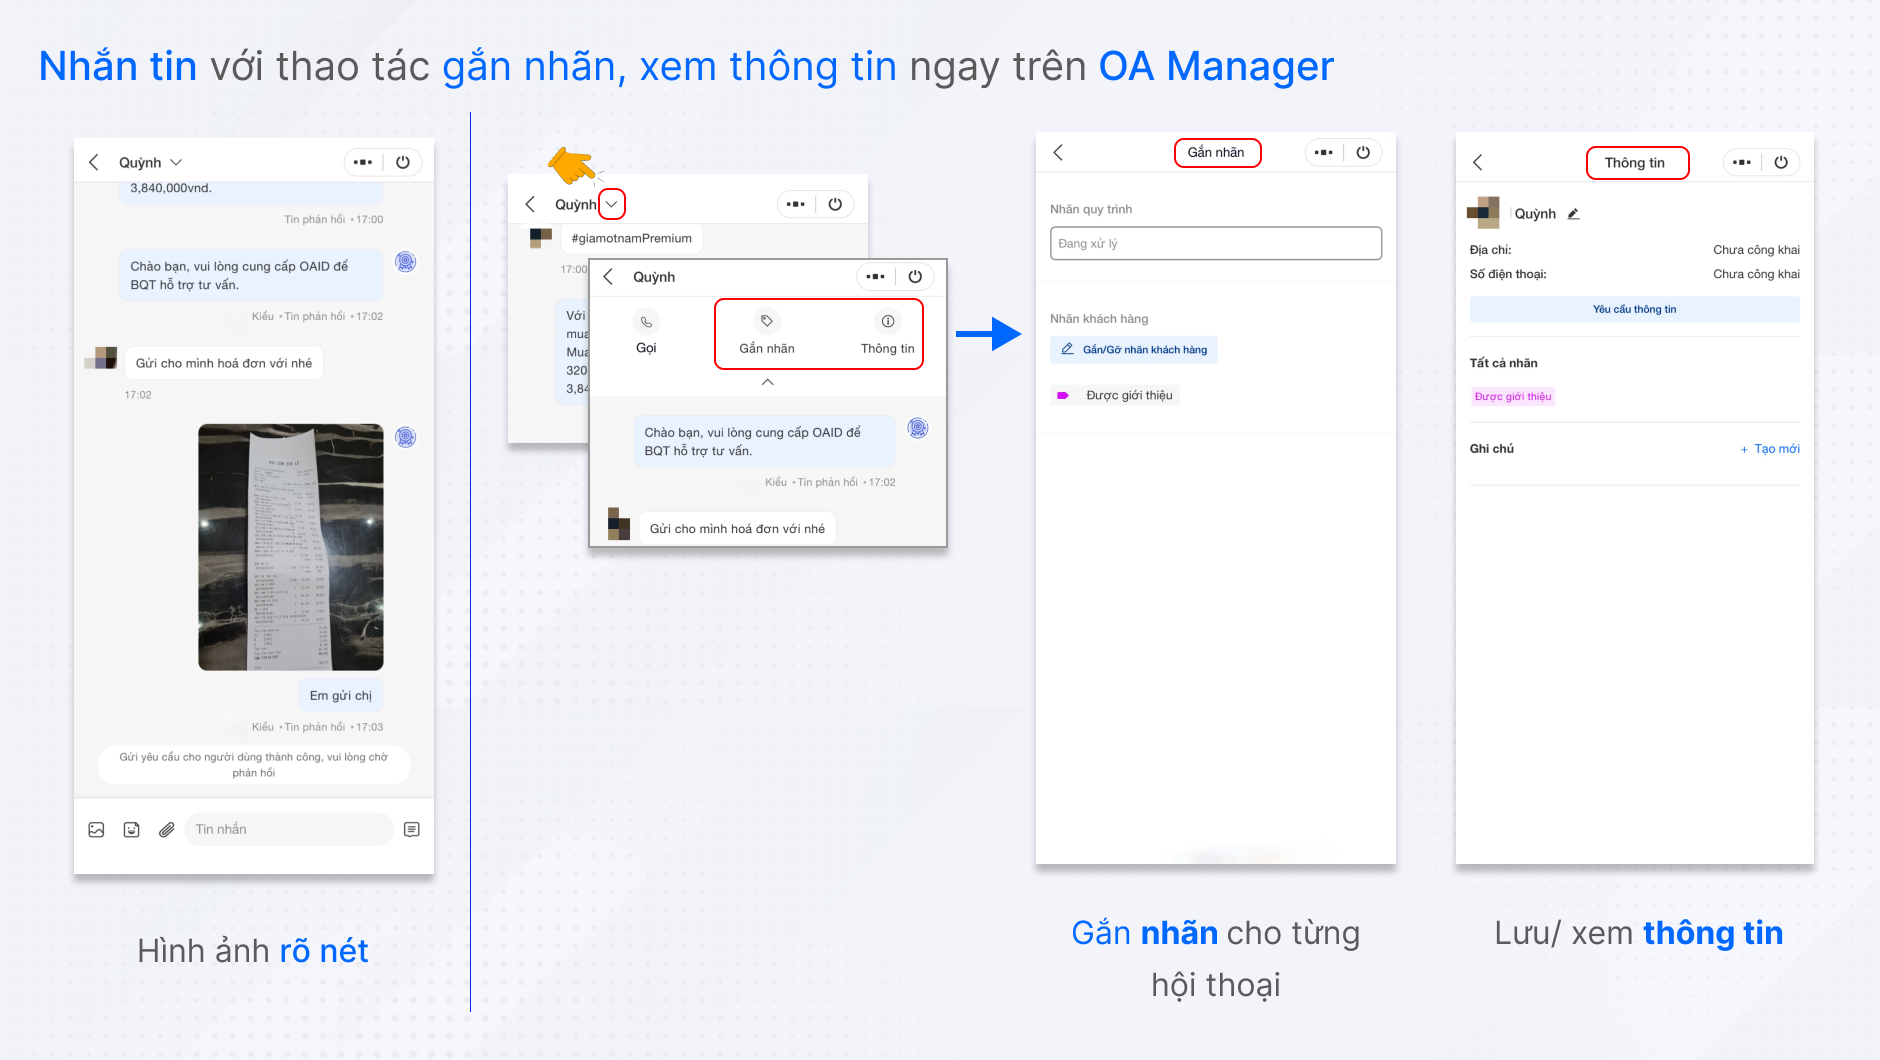 Tương tác với khách hàng dễ dàng cùng Mini App - OA Manager trên điện thoại